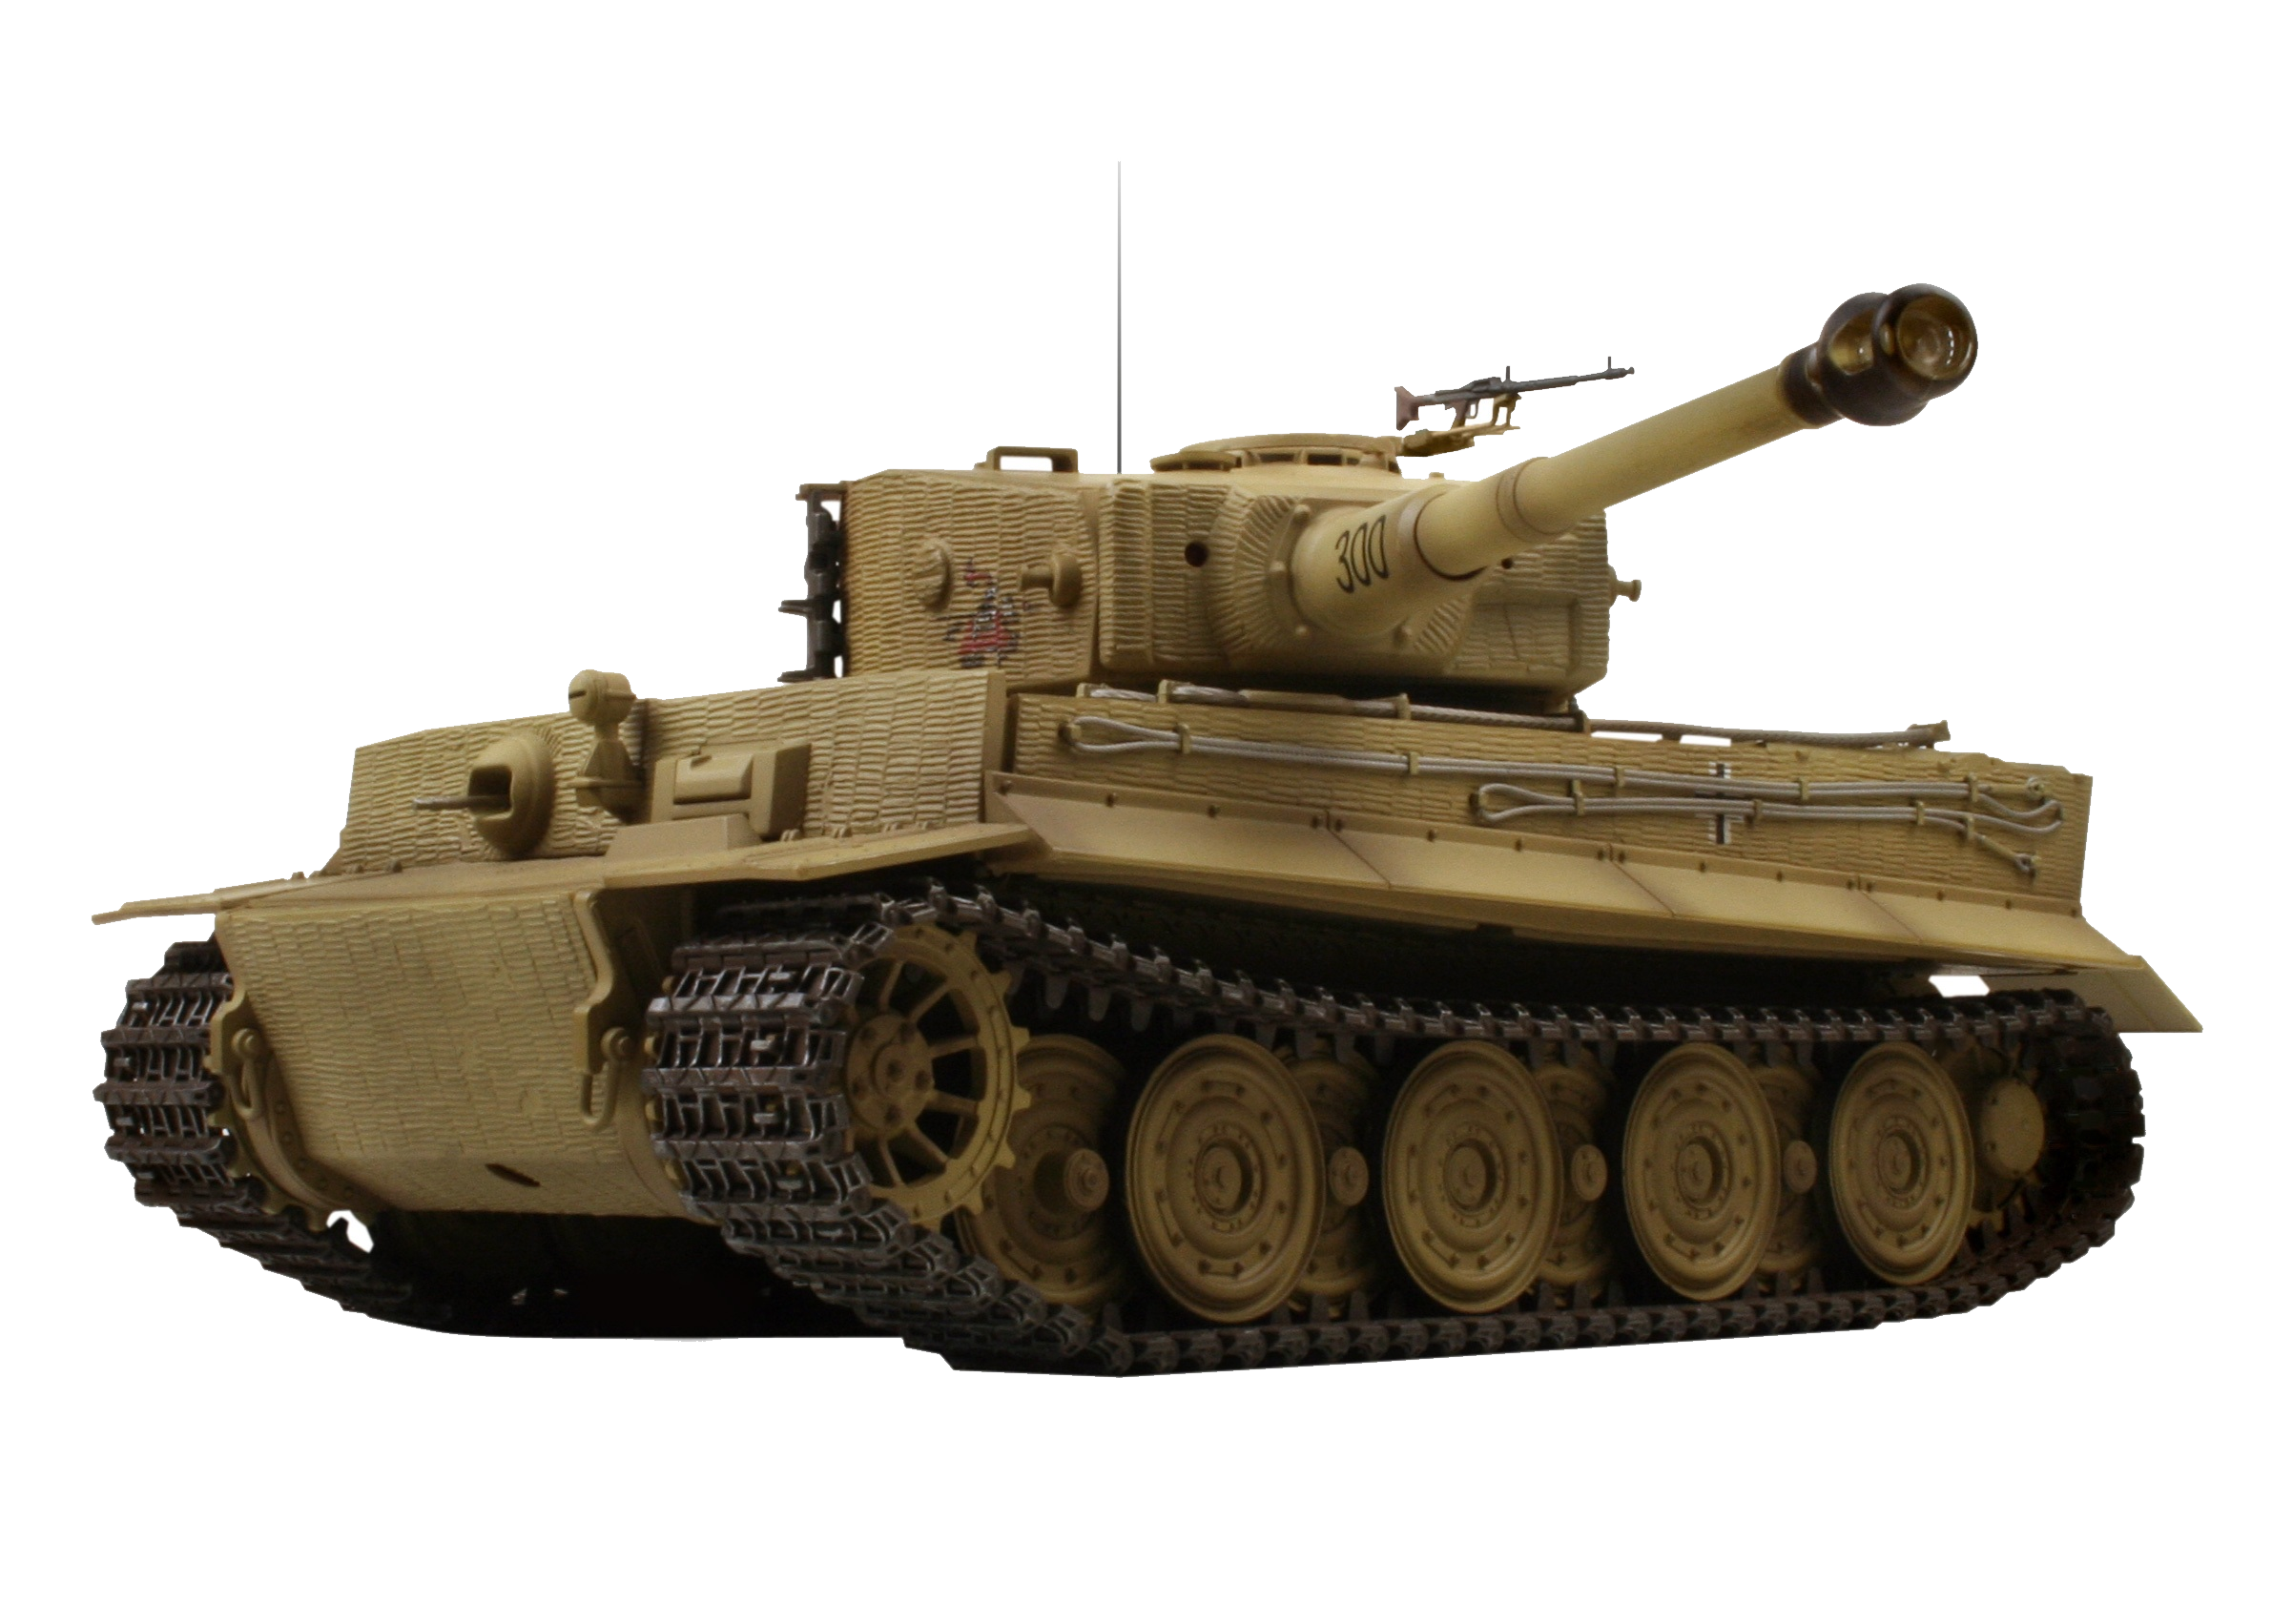 German tiger tank PNG image, armored tank